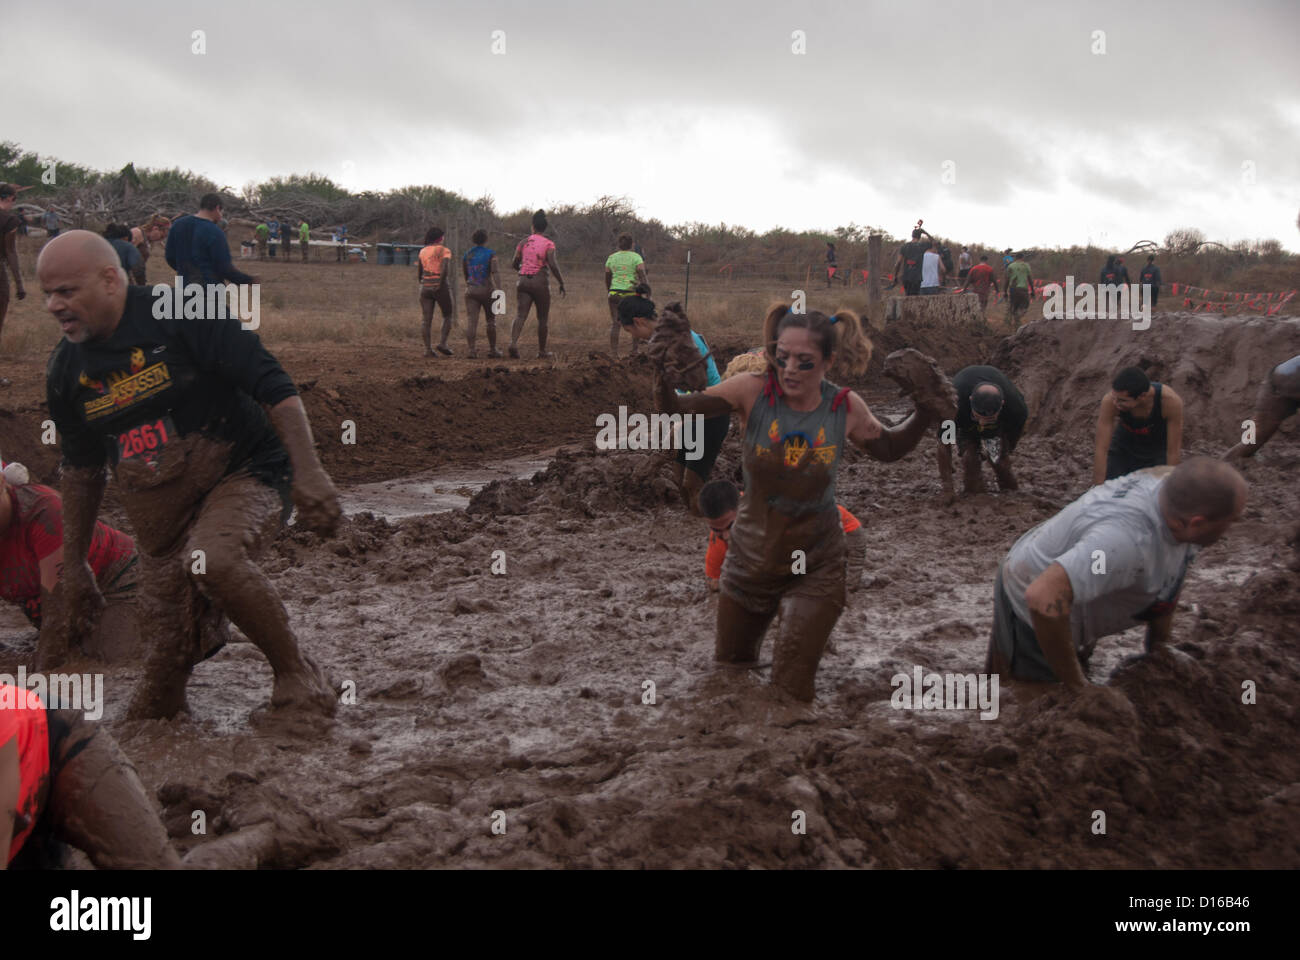 8 décembre 2012 San Antonio, Texas, USA - Les gens rencontrent l'un des nombreux obstacles boue pendant la Gladiator Rock'n courir à San Antonio. Banque D'Images